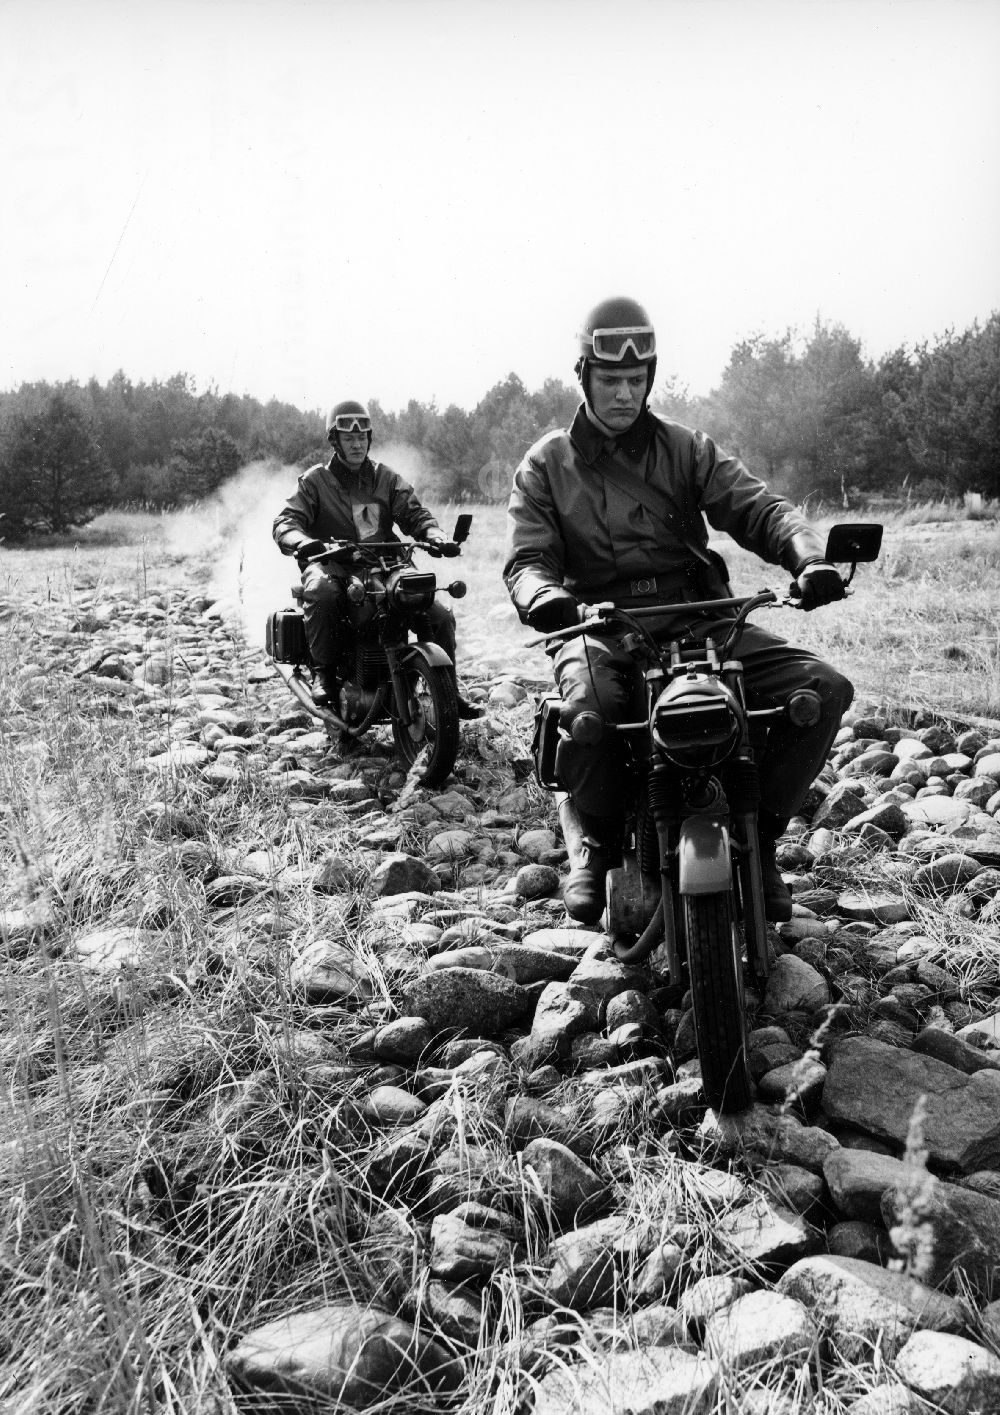 DDR-Bildarchiv: Abbenrode - Motorisierte Grenzposten auf Motorrad MZ während einer Patrouillenfahrt bei Abbenrode im Harz im heutigen Bundesland Sachsen-Anhalt